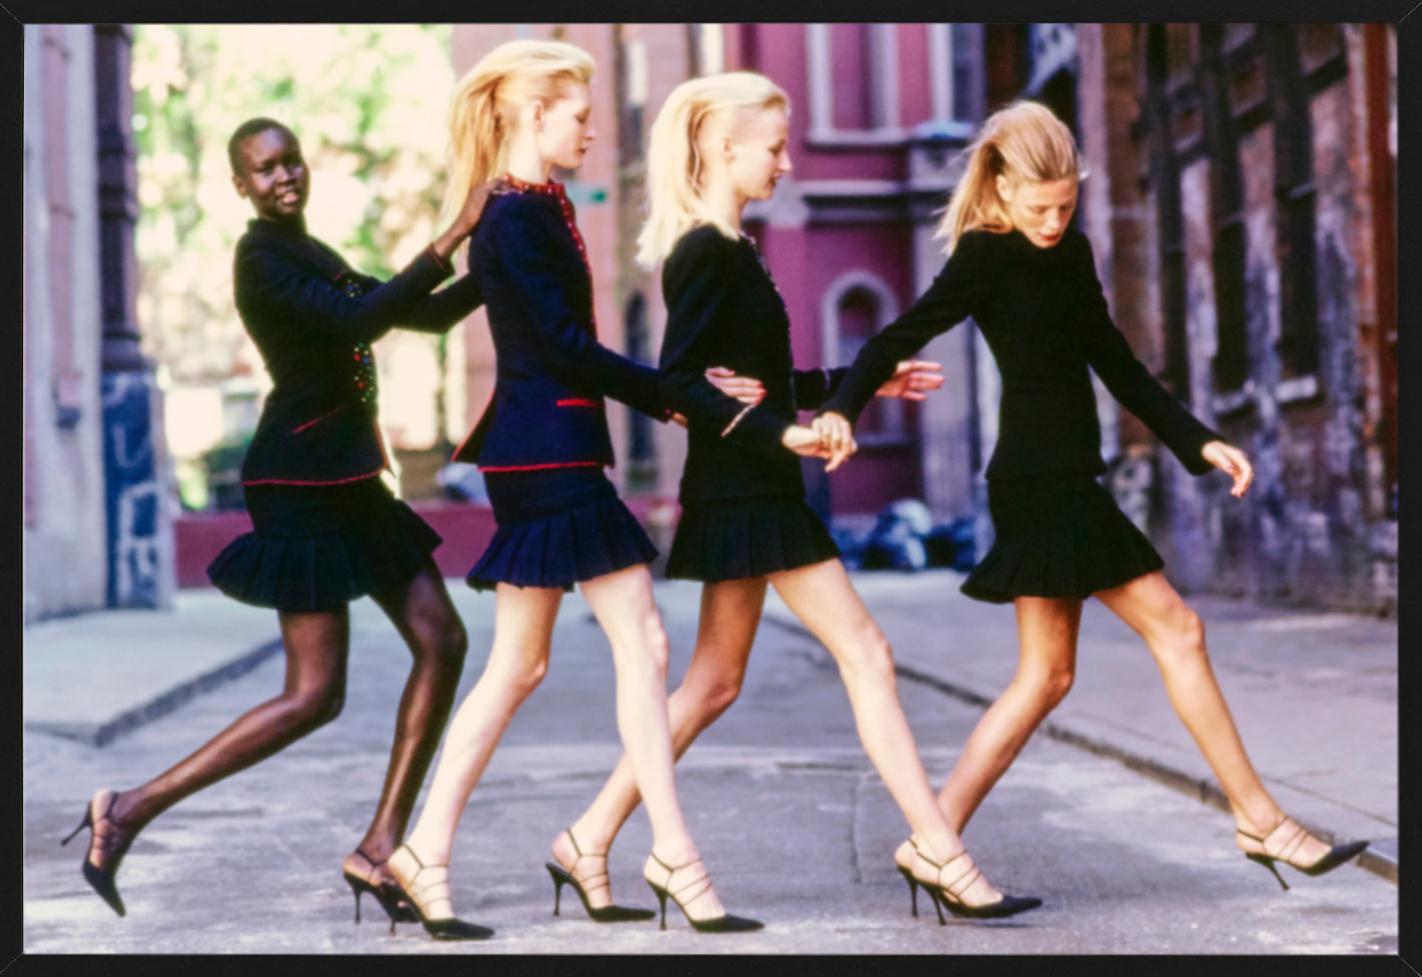 Alek Wek für Vogue – vier Models in schwarzen Powersuits, Kunstfotografie, 1997 (Zeitgenössisch), Photograph, von Arthur Elgort